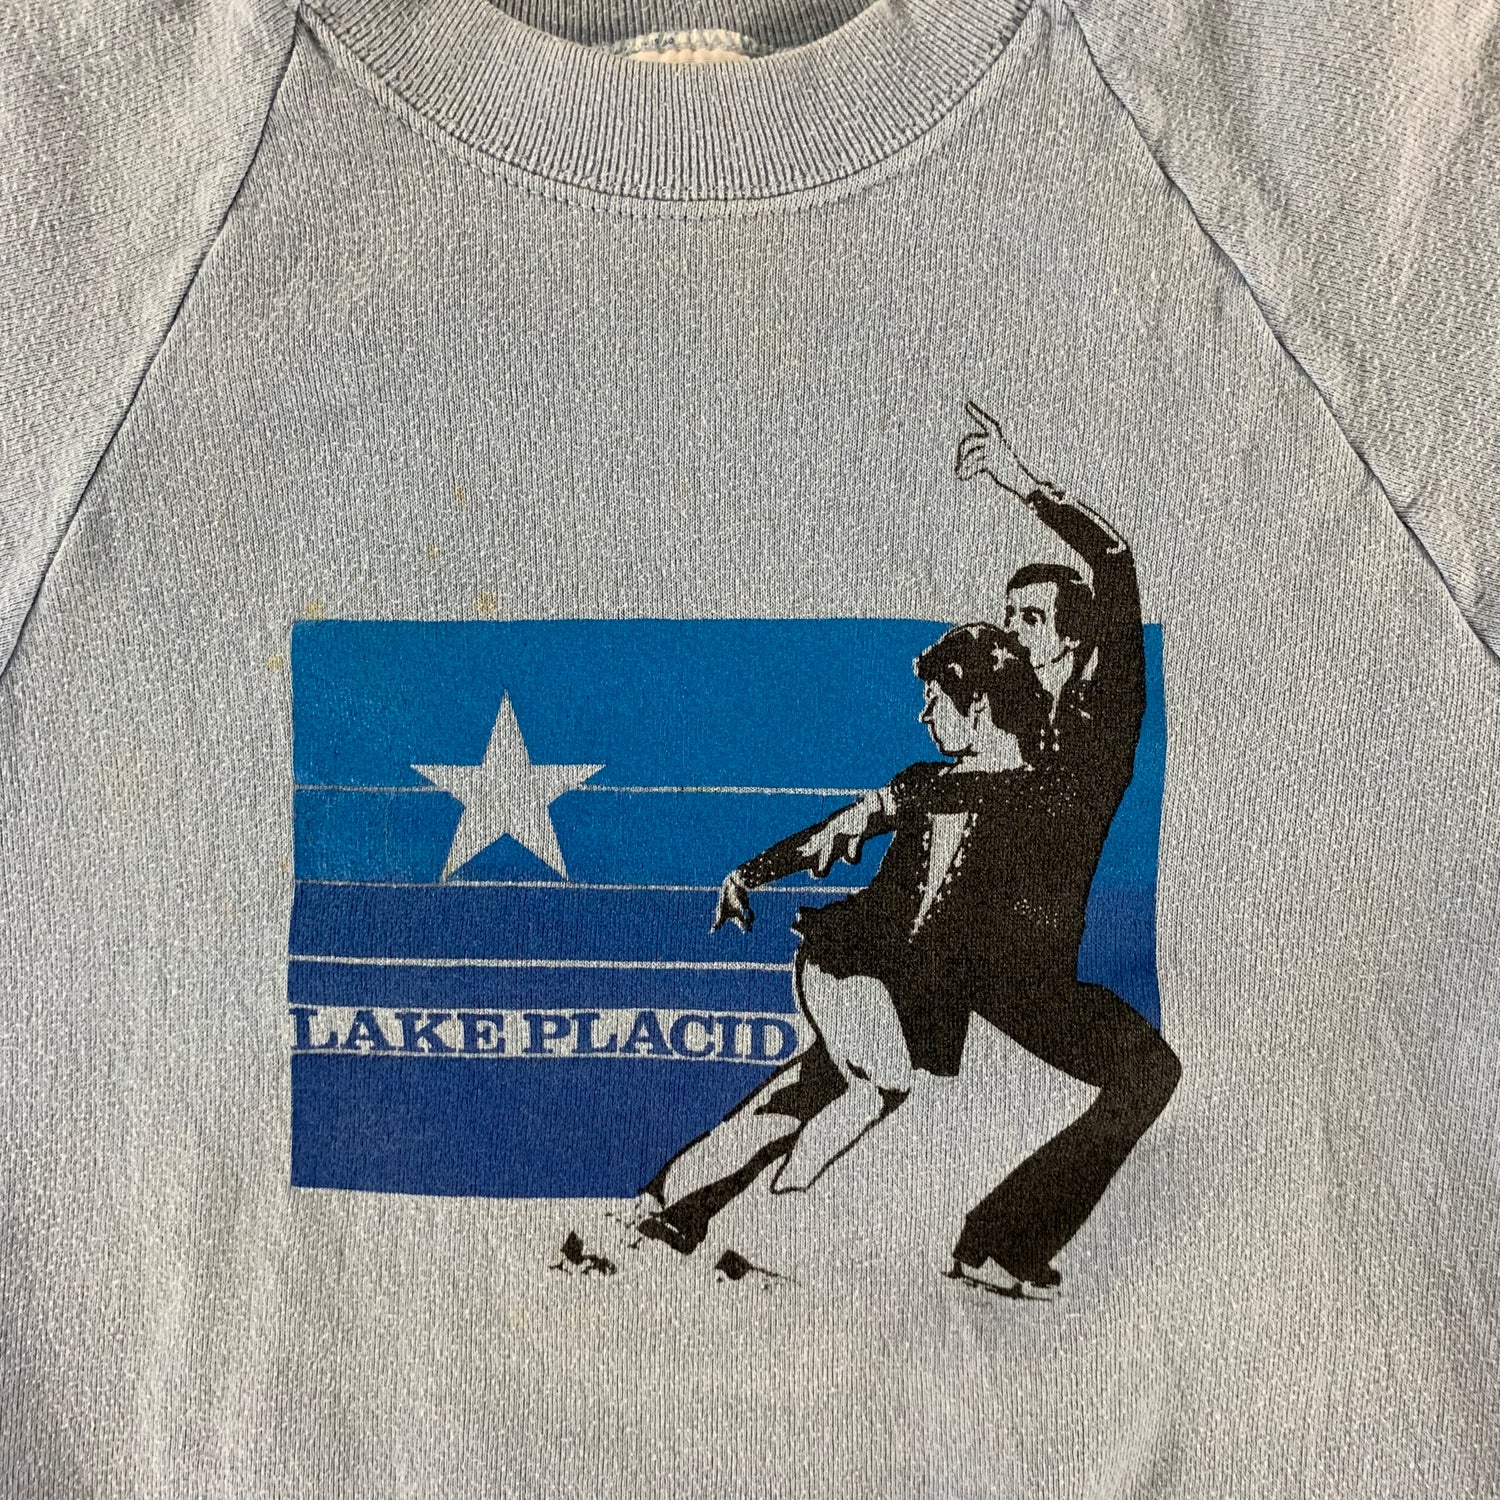 Vintage 1980s Lake Placid Sweatshirt size Medium